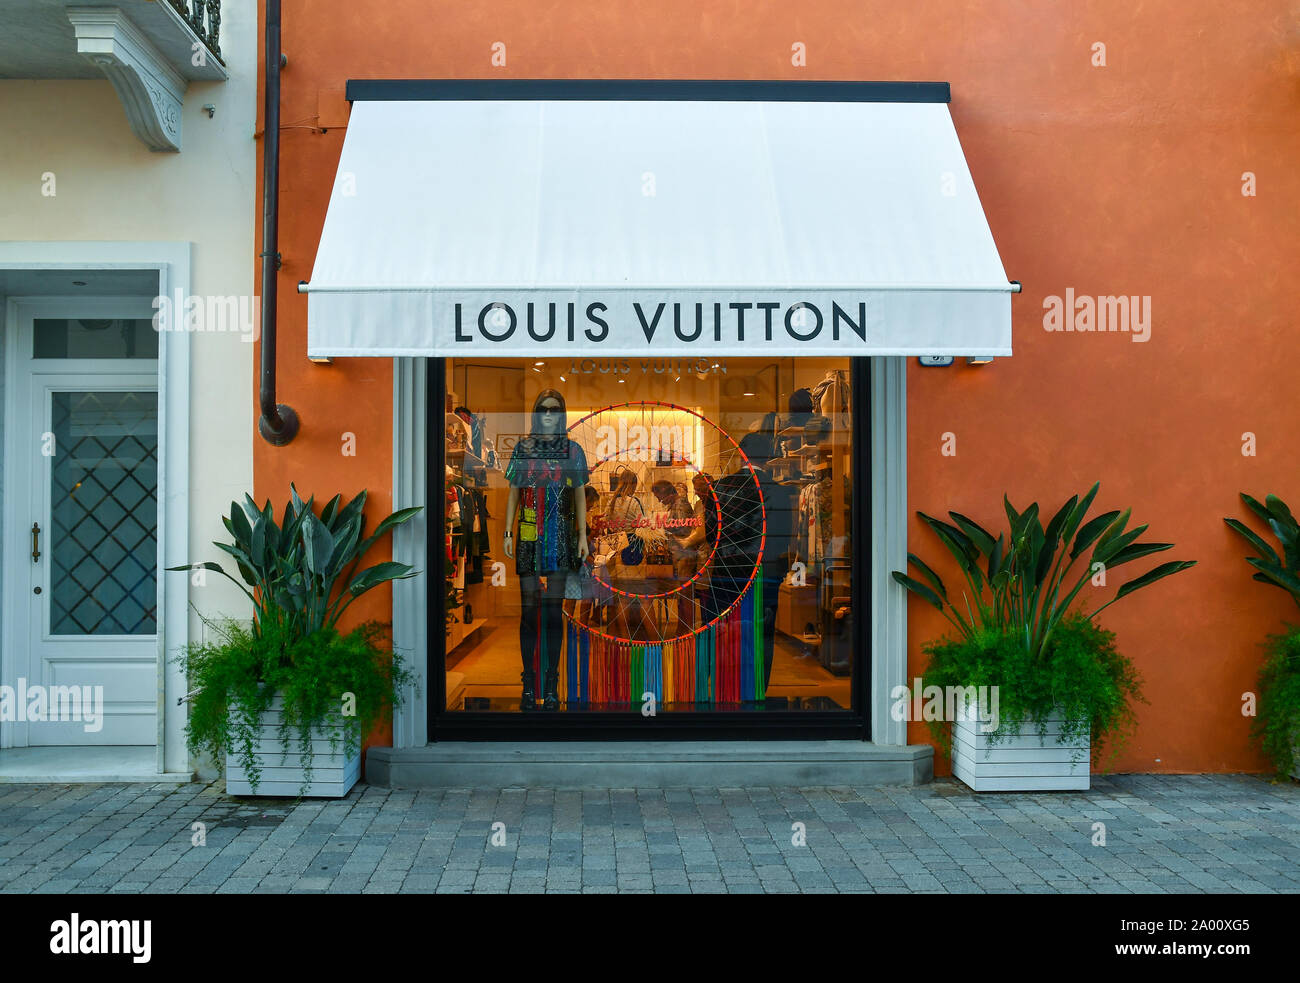 High-End Premium Luxury Retail Italian Fashion Louis Vuitton Store, 190-192  Sloane Street, London, SW1X 9QX Stock Photo - Alamy